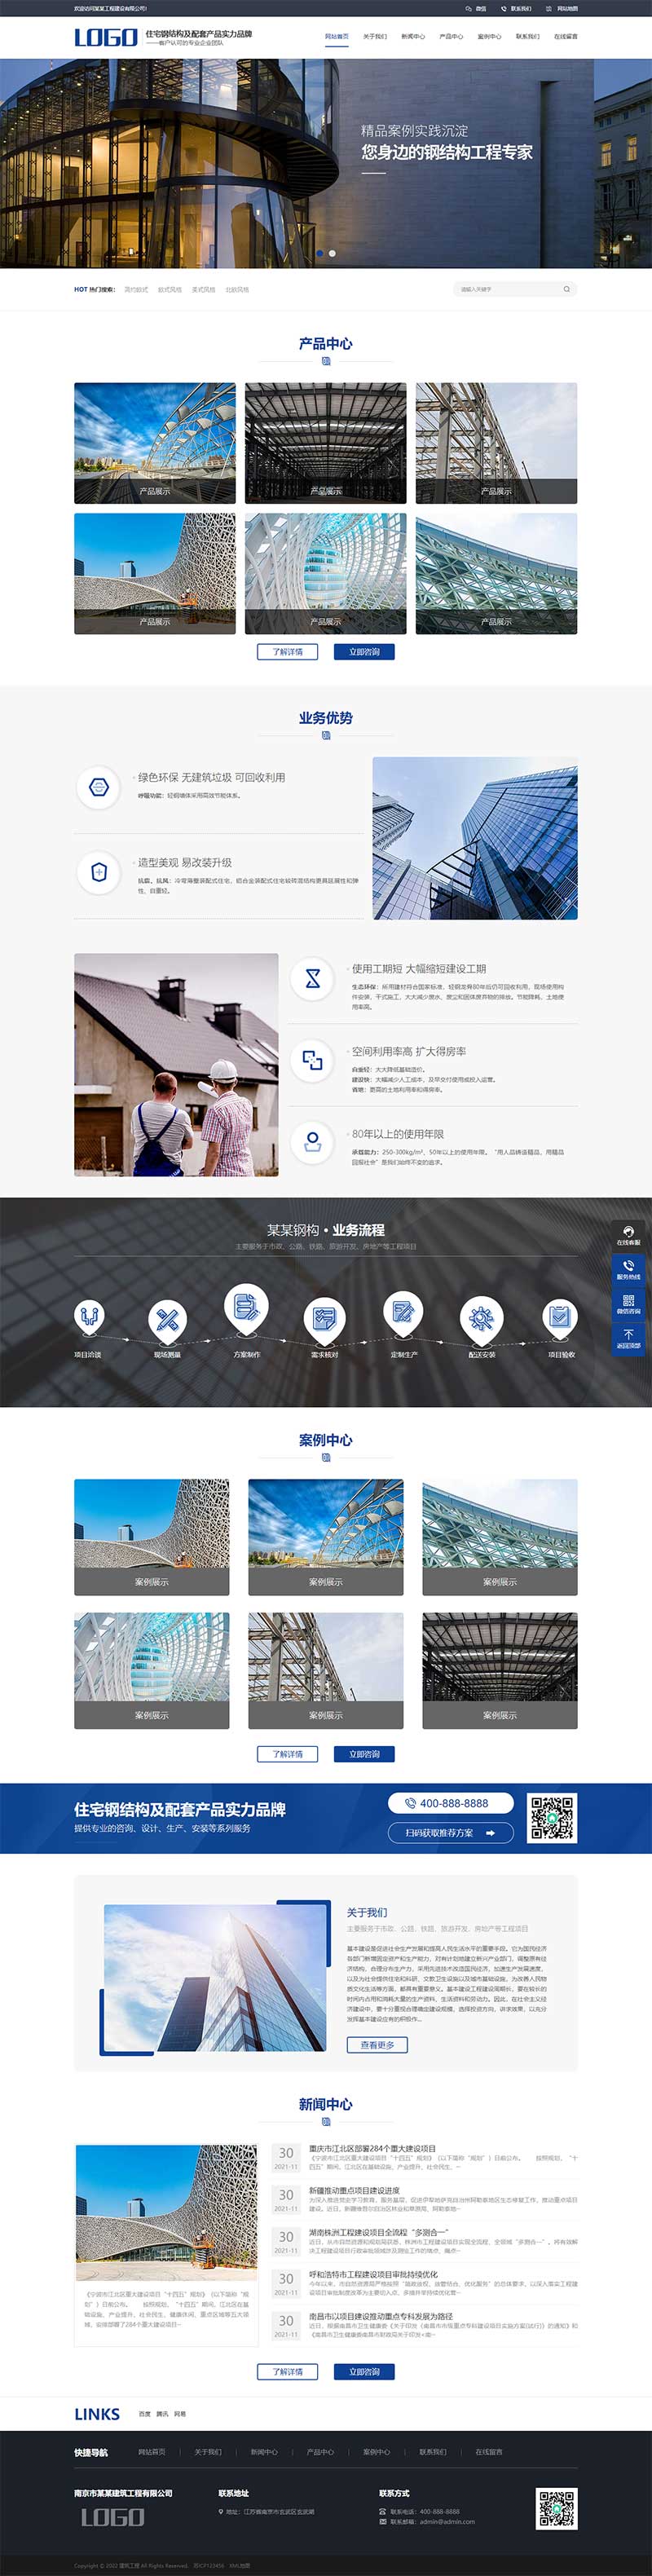 蓝色钢结构机械五金网站模板 营销型工程建筑基建网站源码下载